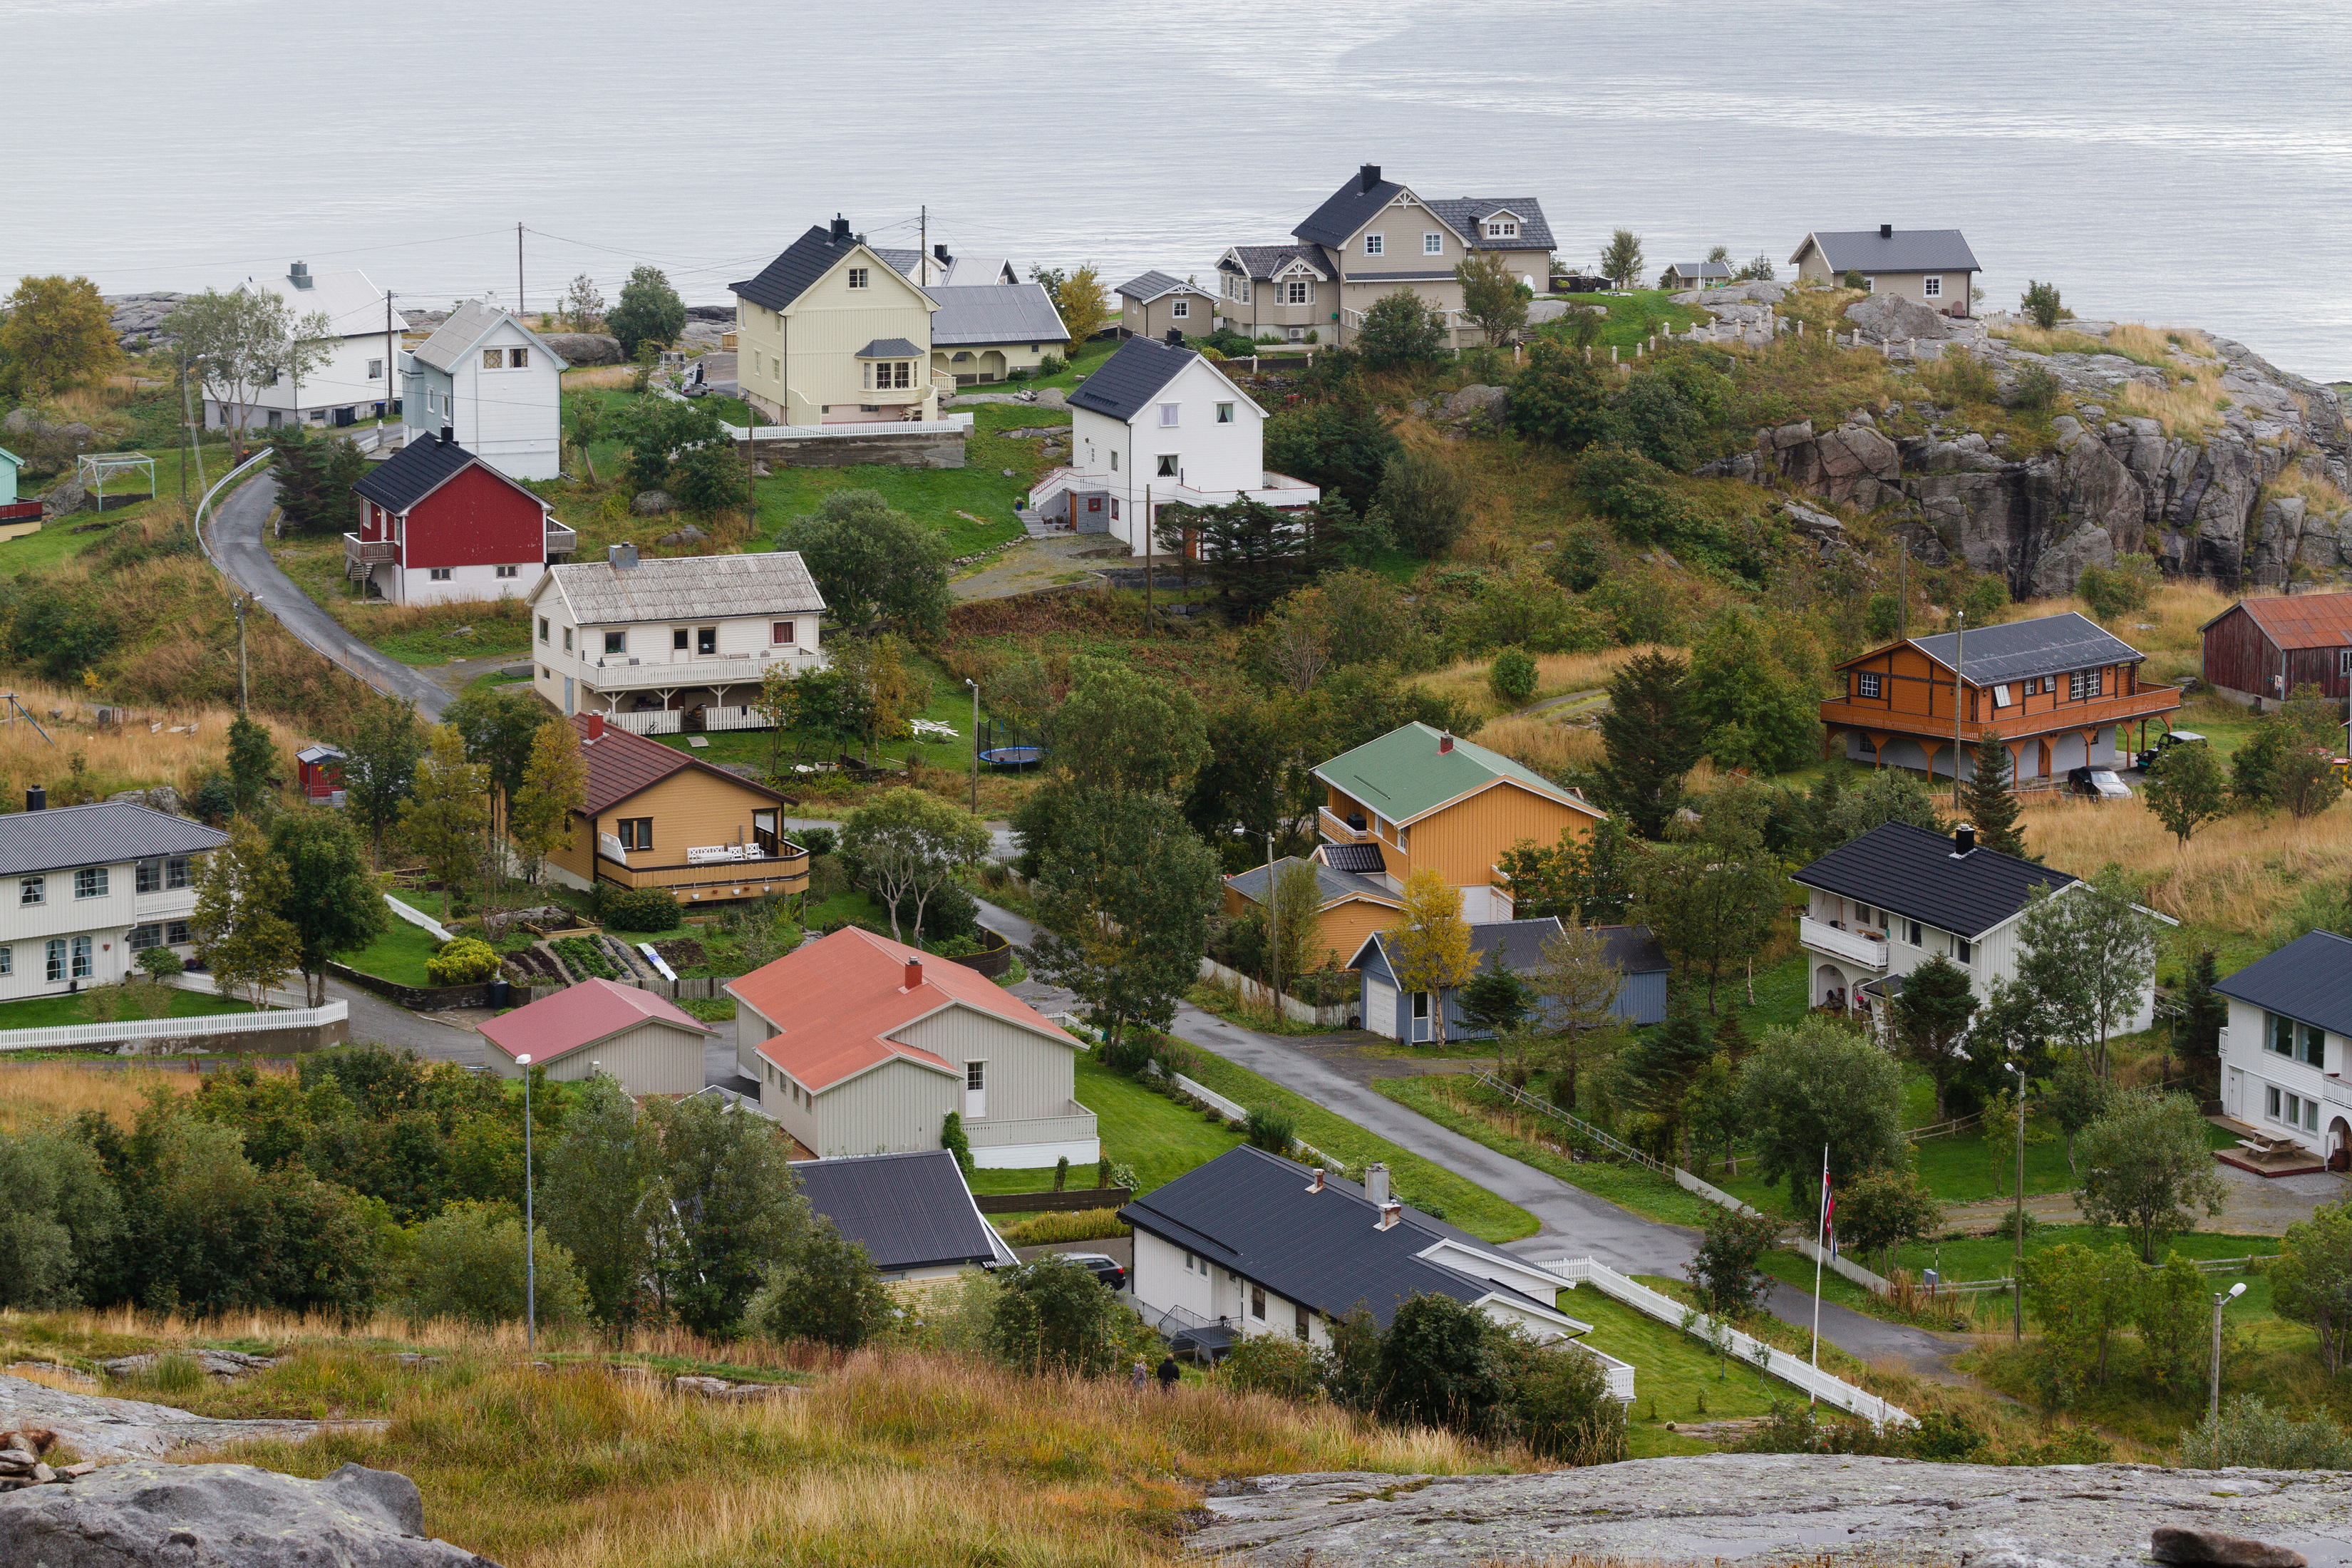 Residential in Å i Lofoten, Moskenesøya, Lofoten, Norway, 2015 September